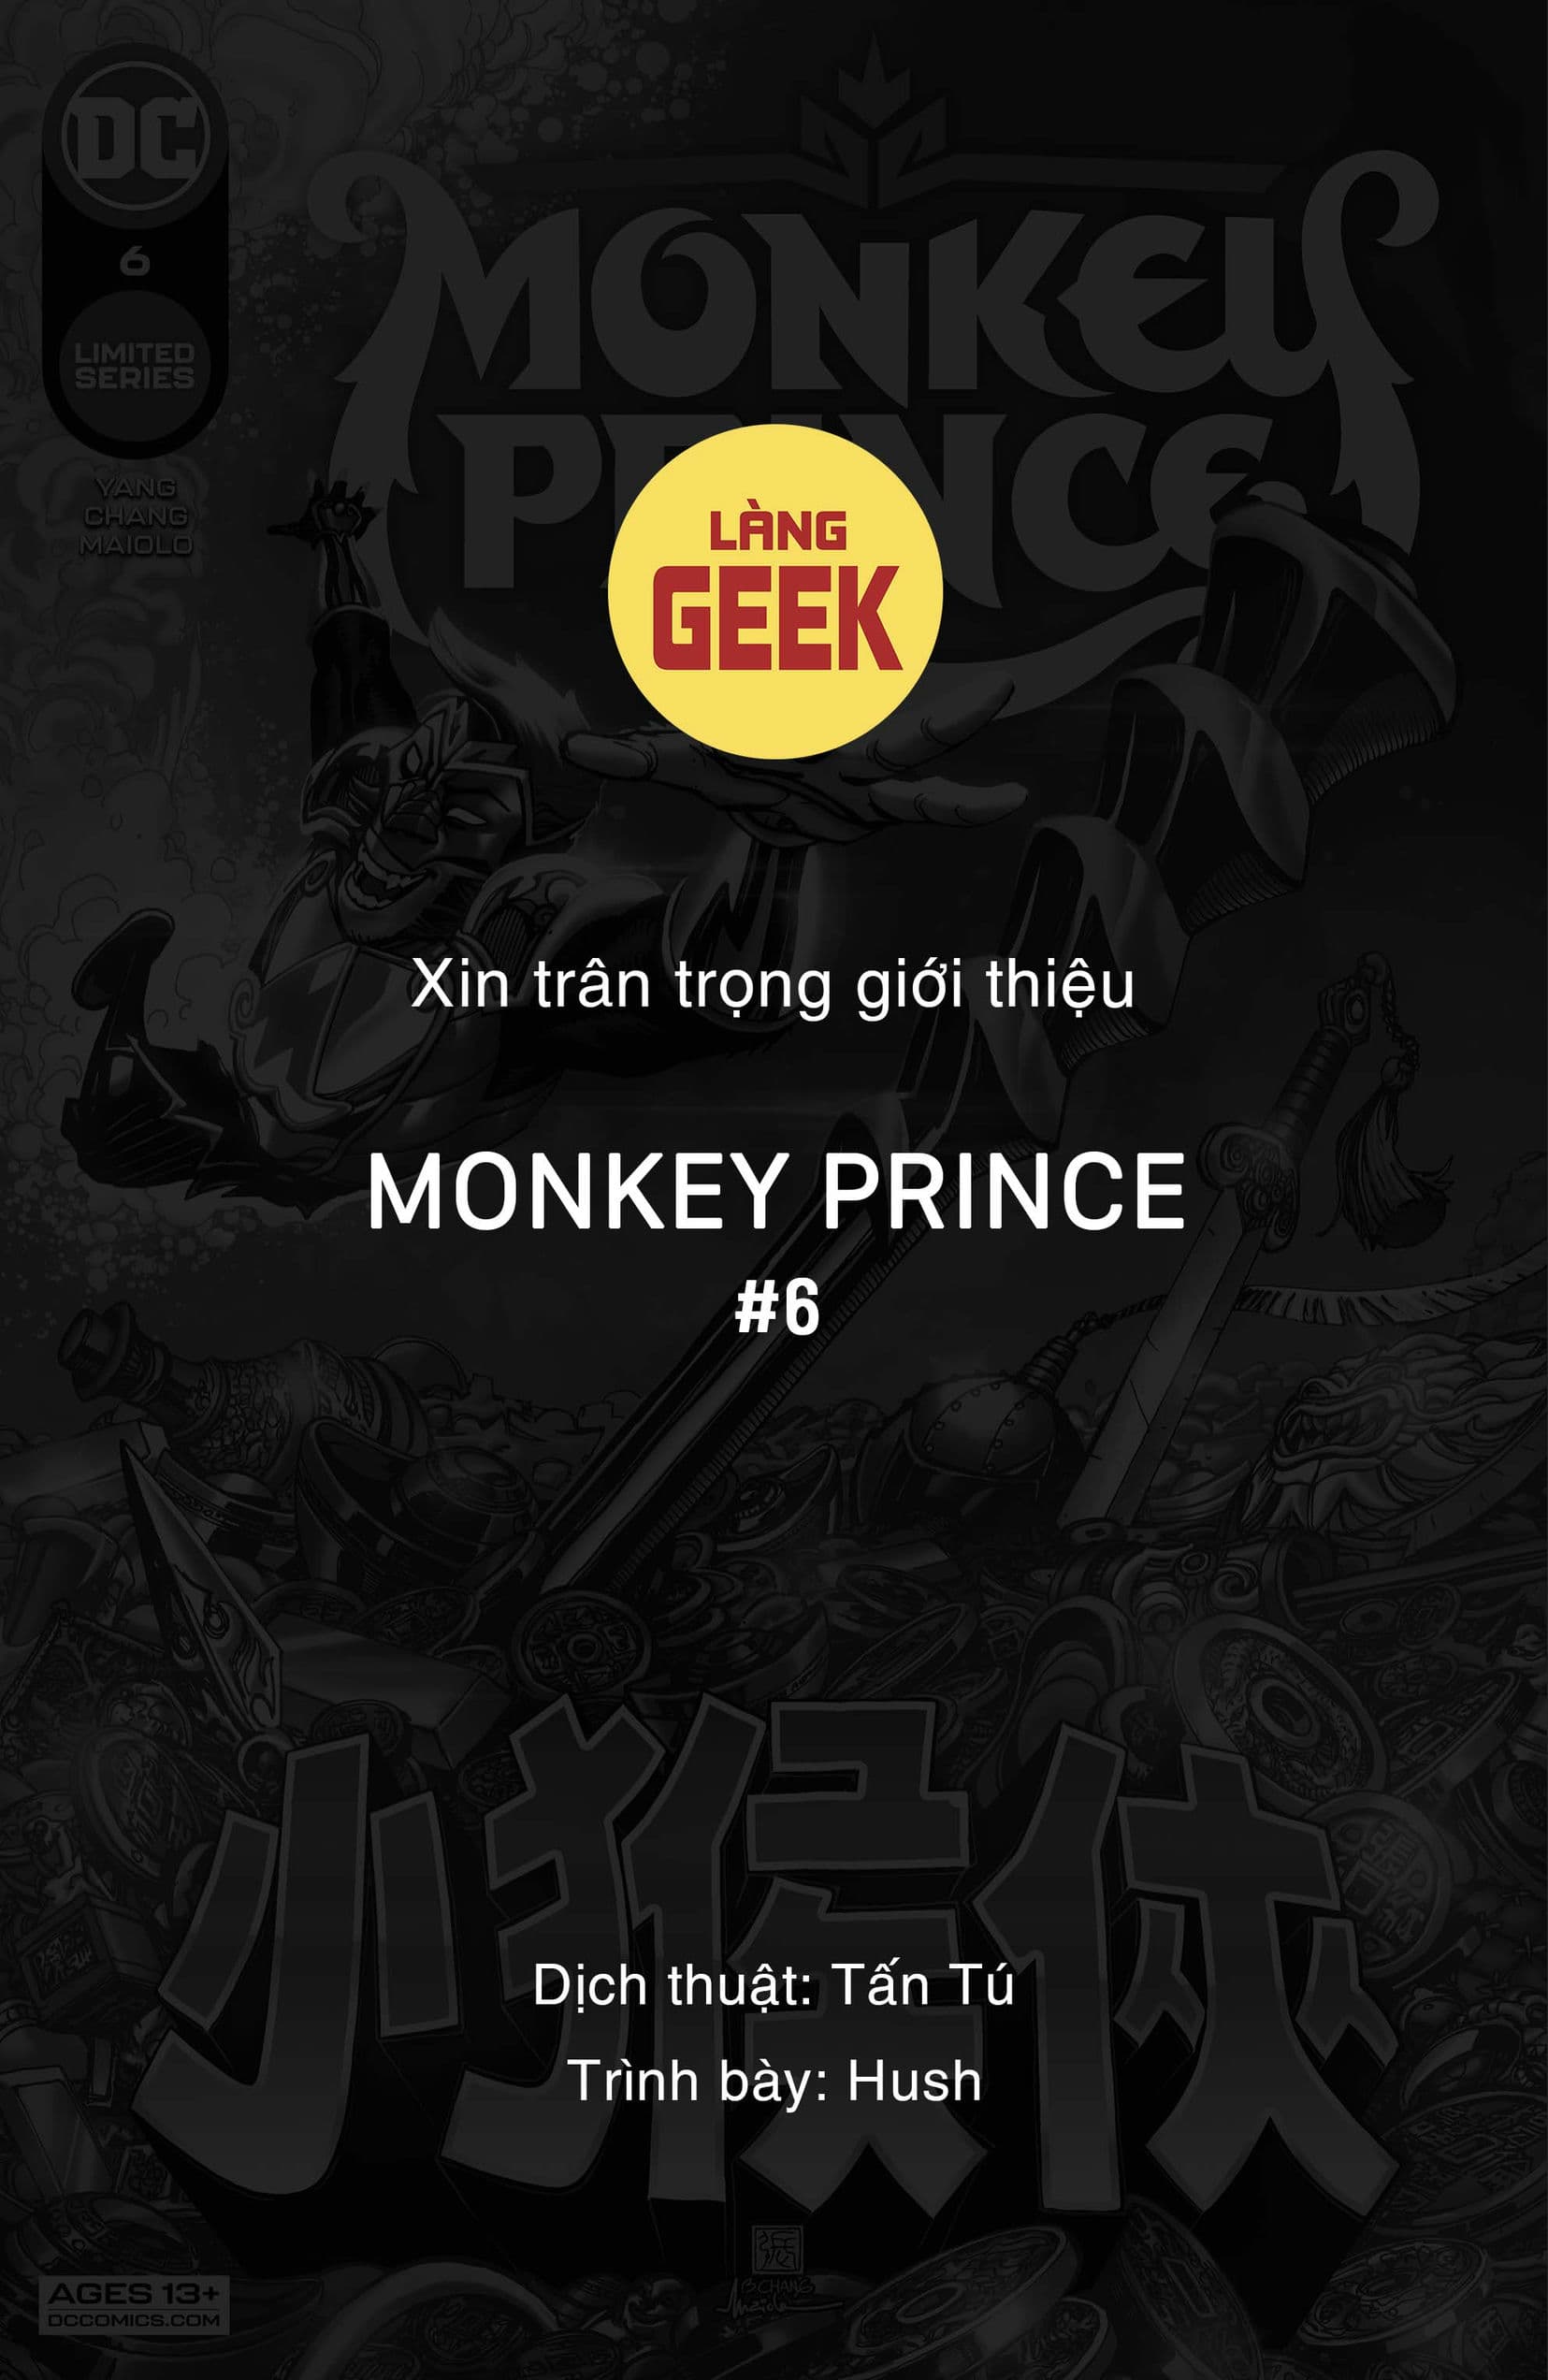 https://langgeek.net/wp-content/webpc-passthru.php?src=https://langgeek.net/wp-content/uploads/2023/04/Monkey-Prince-2022-006-000-1.jpg&nocache=1